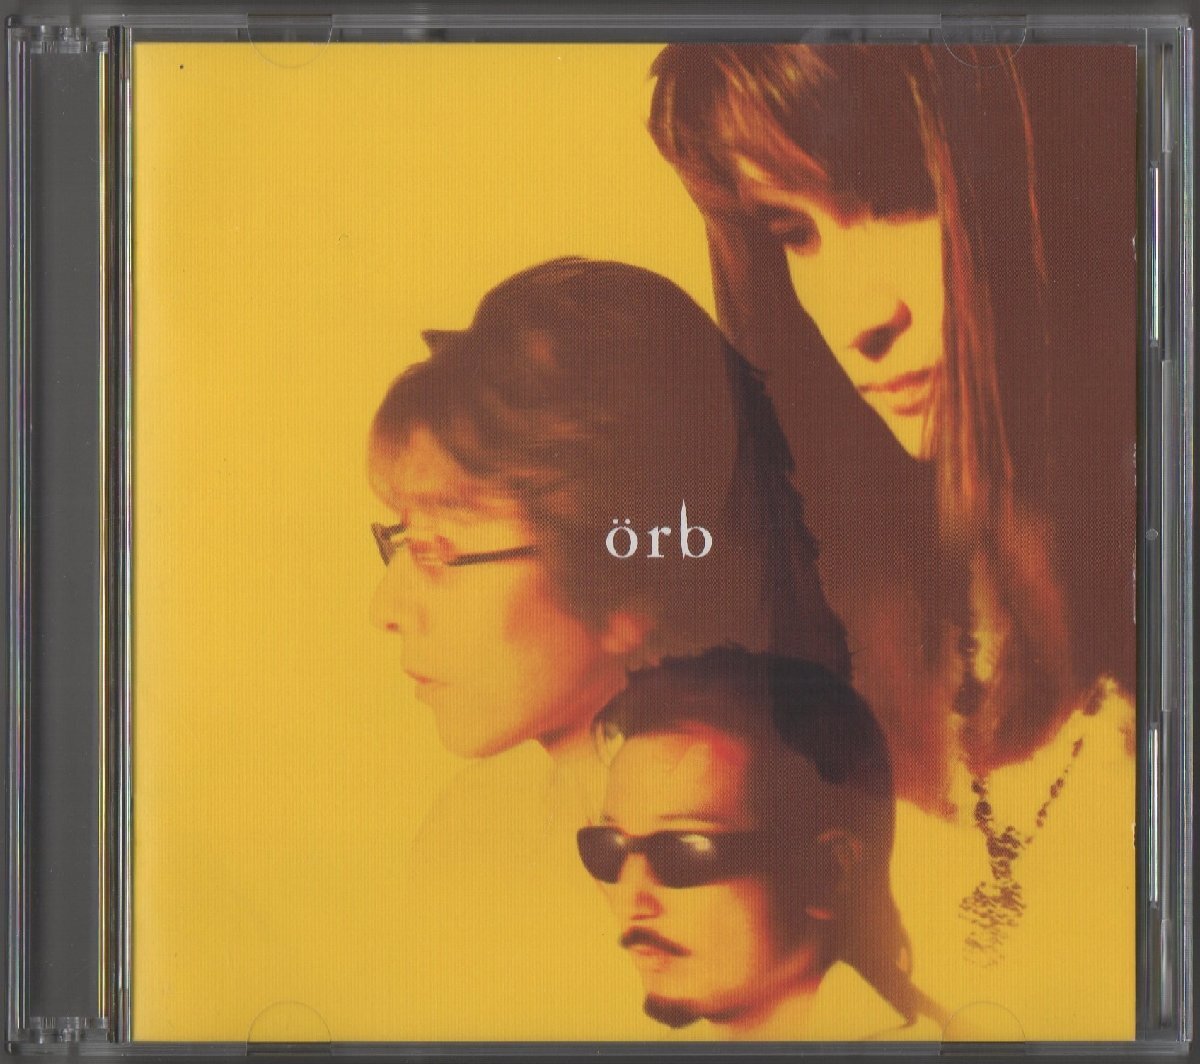 THE ALFEE Alf .-/ orbo-b/ 1999.09.29 / 19th альбом / первый раз ограничение запись / 2CD / новый maxi одиночный жакет specification / TOCT-24210